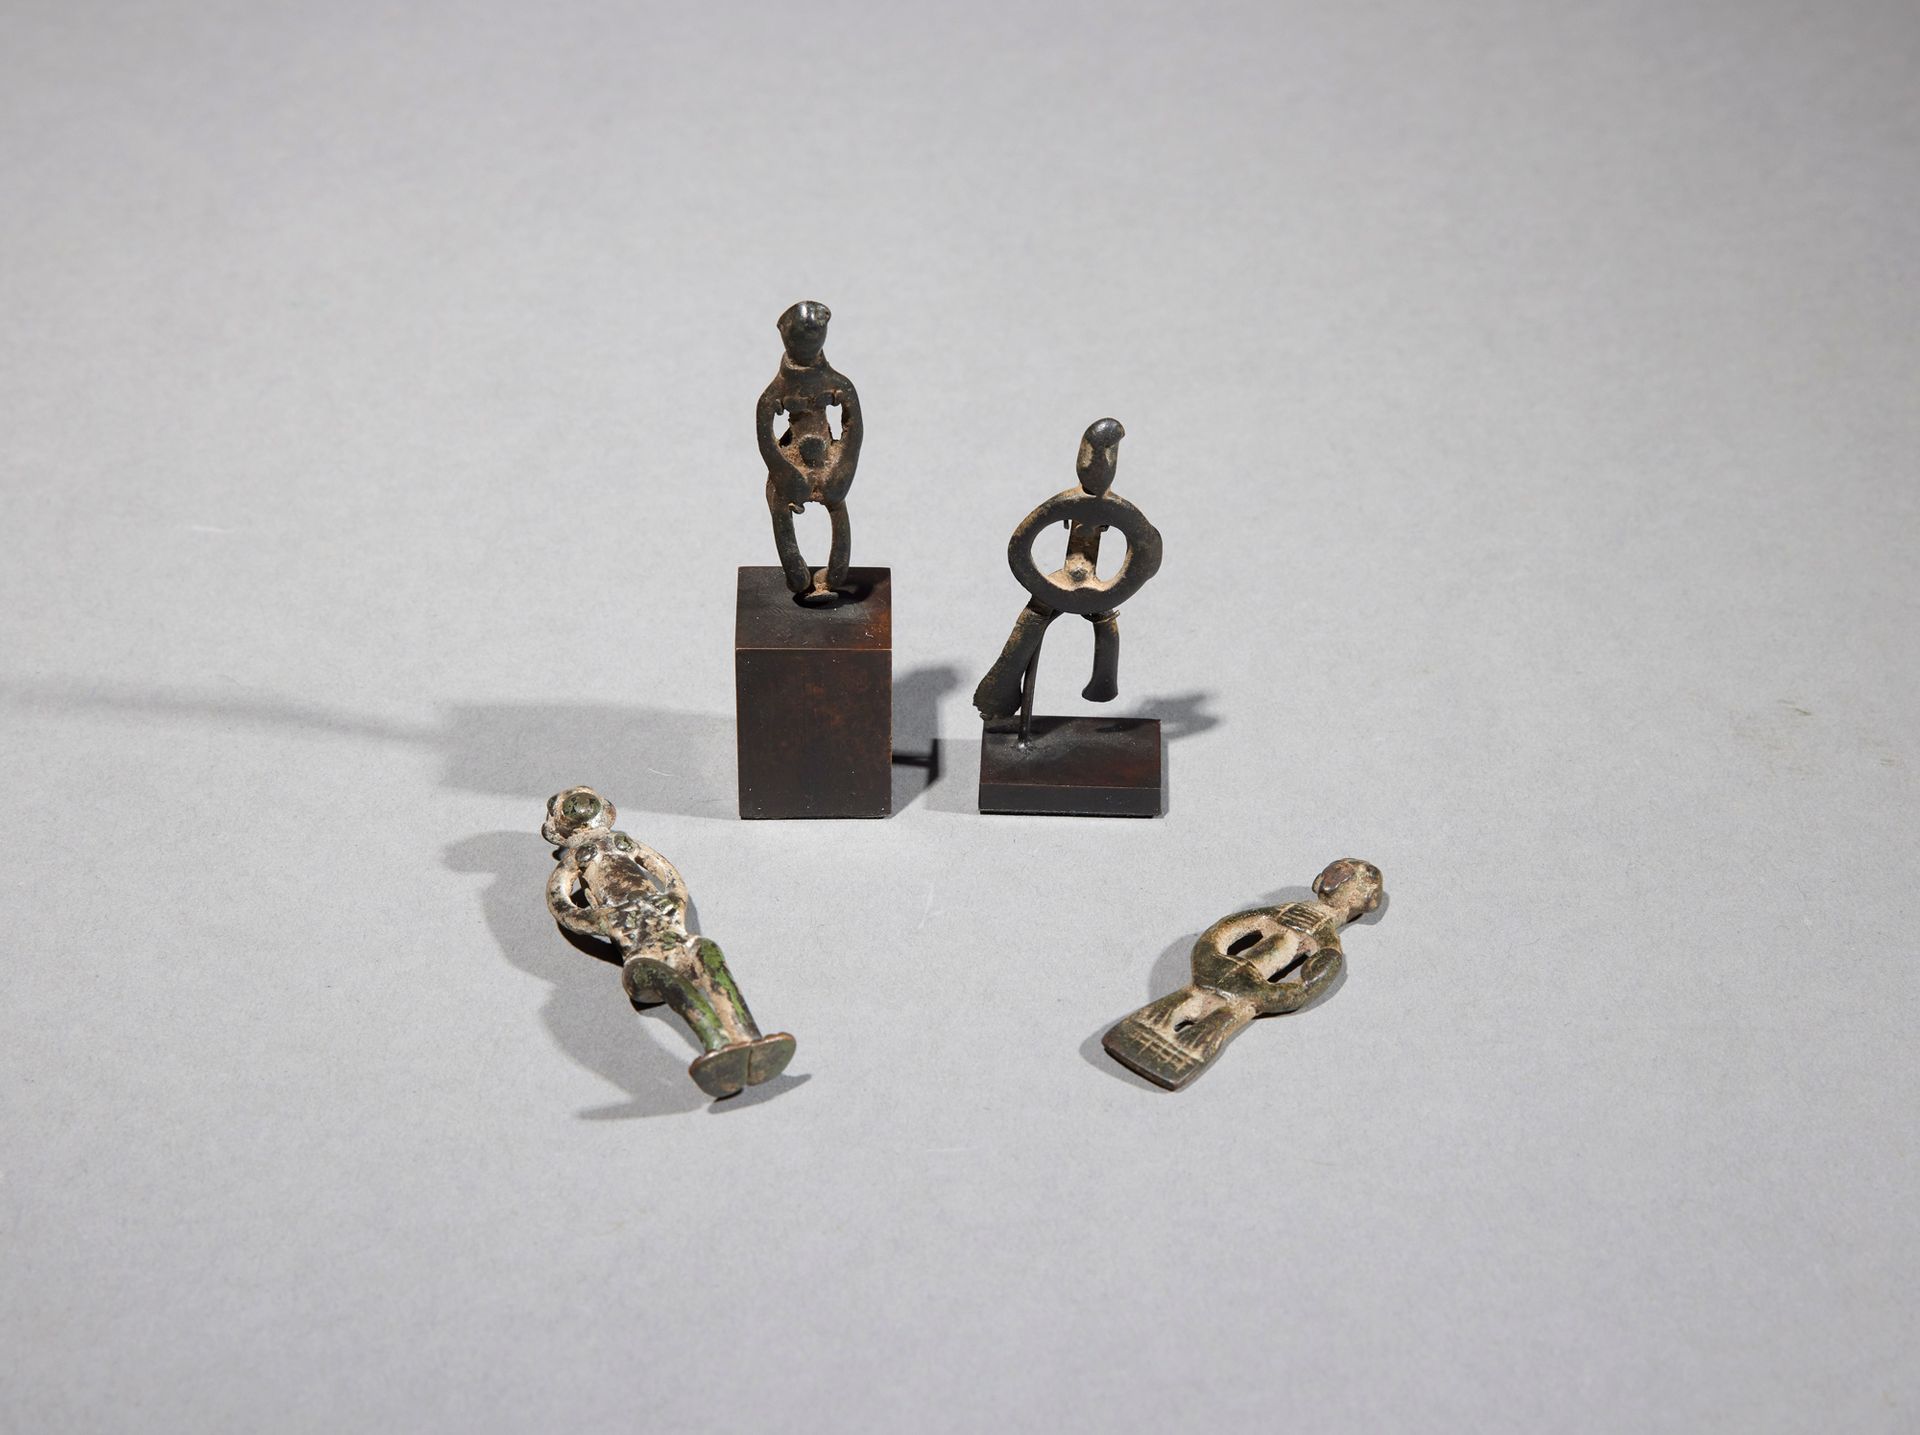 Null 四个塞努弗护身符

象牙海岸

铜质

H.4.5至6厘米



一套四件塞努弗铜制护身符，显示拟人化的形象。